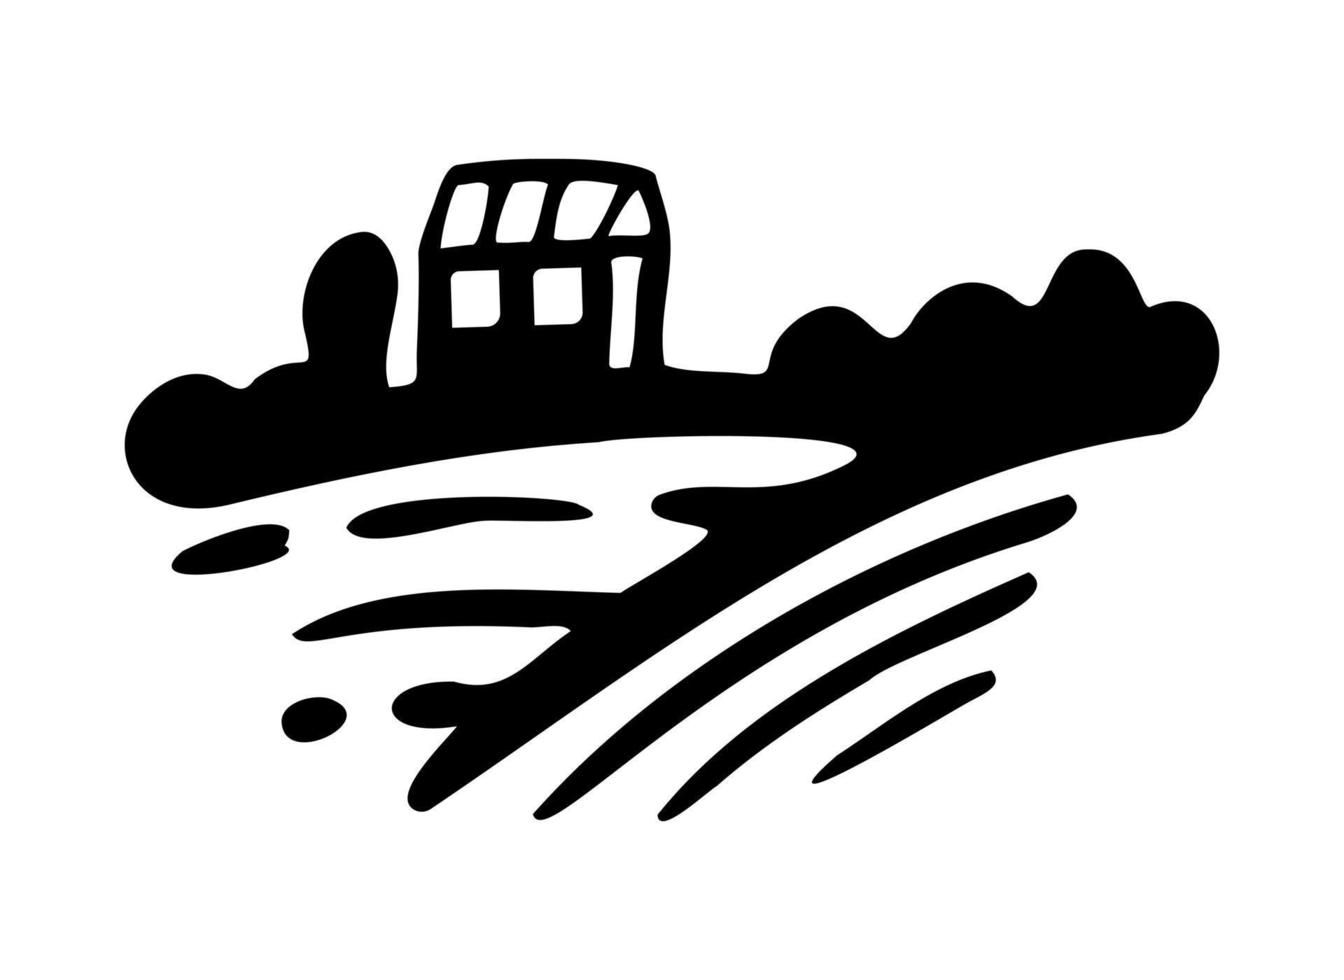 villaggio con campi e sole. paesaggio rurale con piccola fattoria e alberi. stile di incisione disegnato a mano. disegno grafico di disegno di logo di doodle. vettore